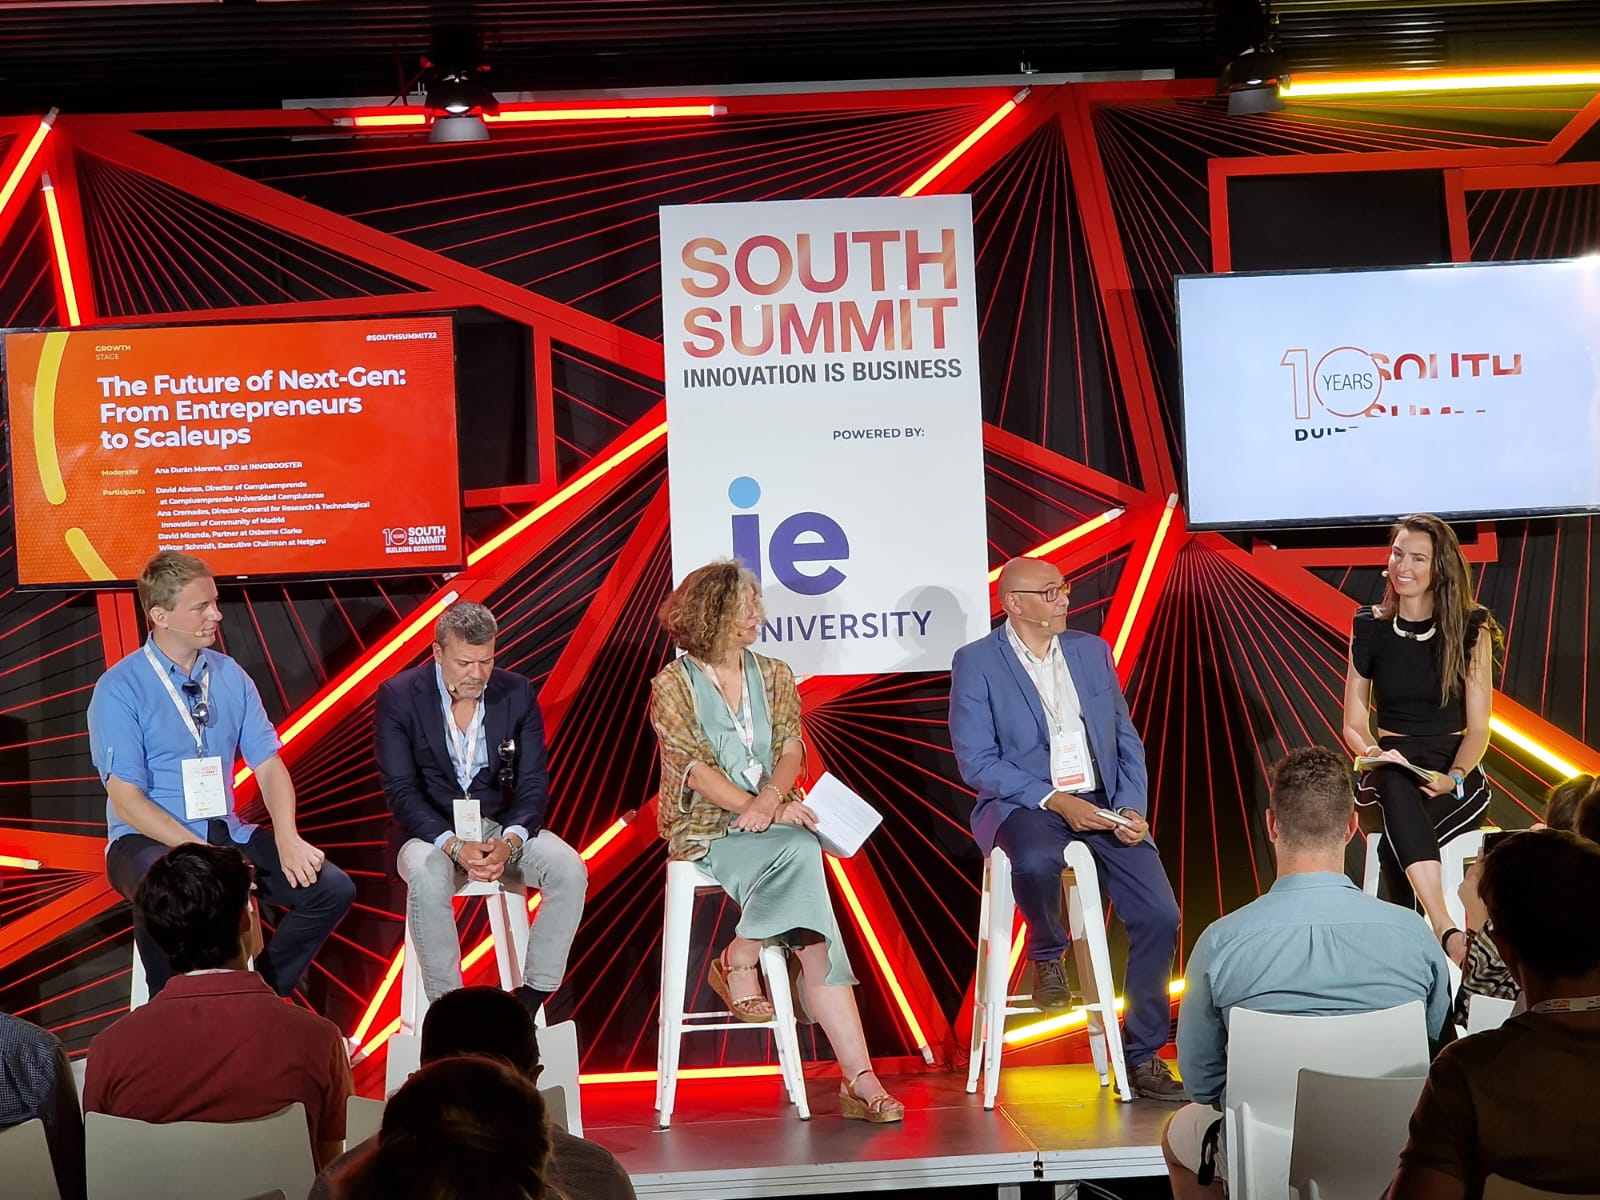 SOUTH SUMMIT: El futuro de las próximas generaciones, desde emprendedores hasta empresas en expansión